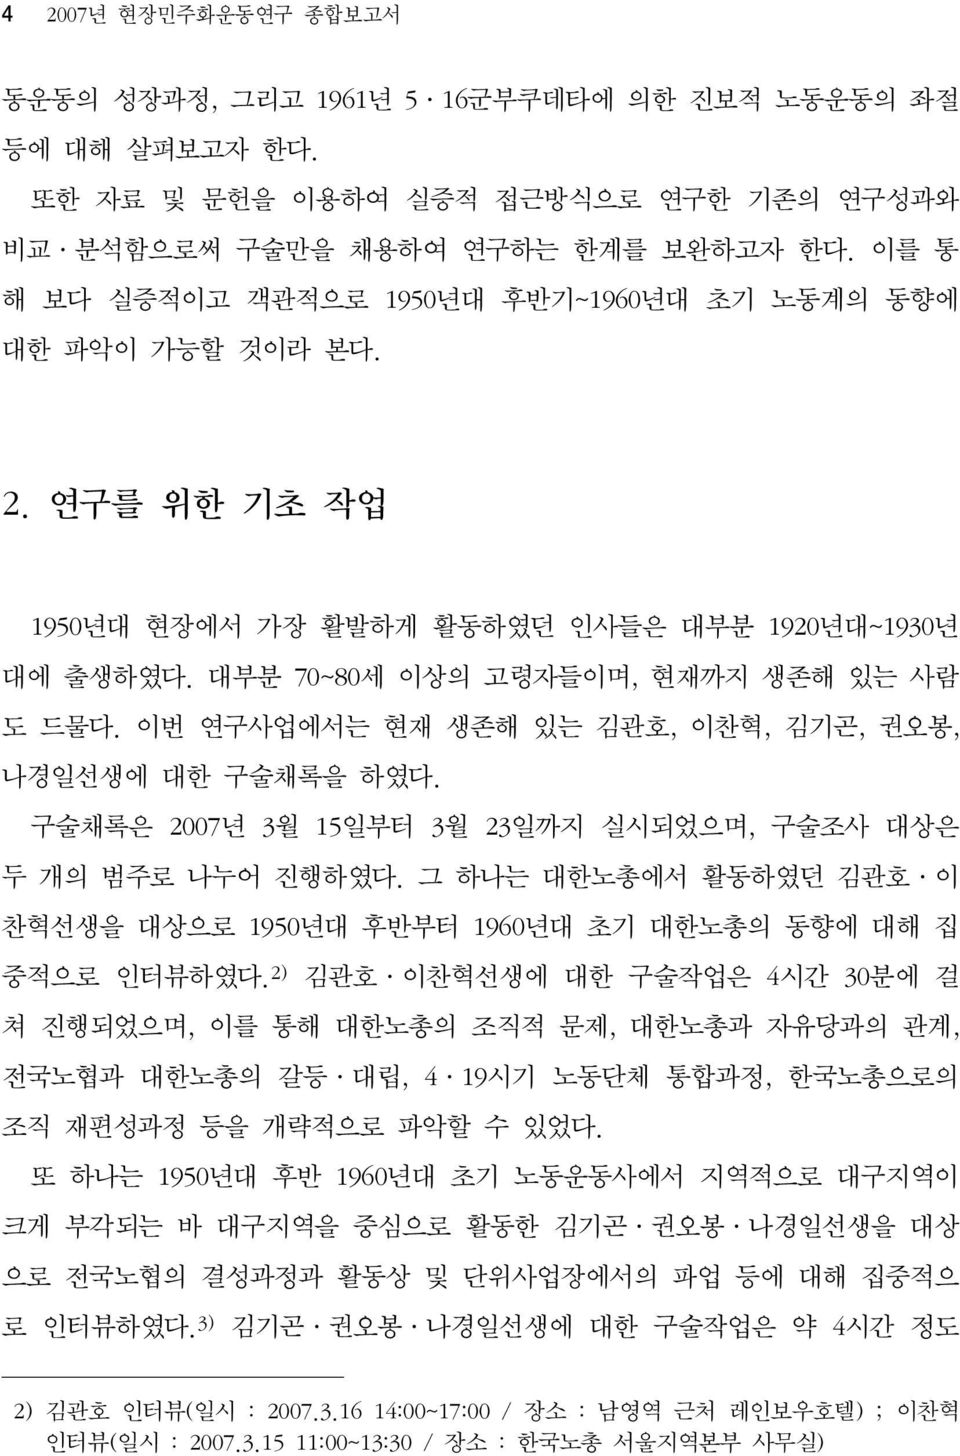 이번 연구사업에서는 현재 생존해 있는 김관호, 이찬혁, 김기곤, 권오봉, 나경일선생에 대한 구술채록을 하였다. 구술채록은 2007년 3월 15일부터 3월 23일까지 실시되었으며, 구술조사 대상은 두 개의 범주로 나누어 진행하였다.